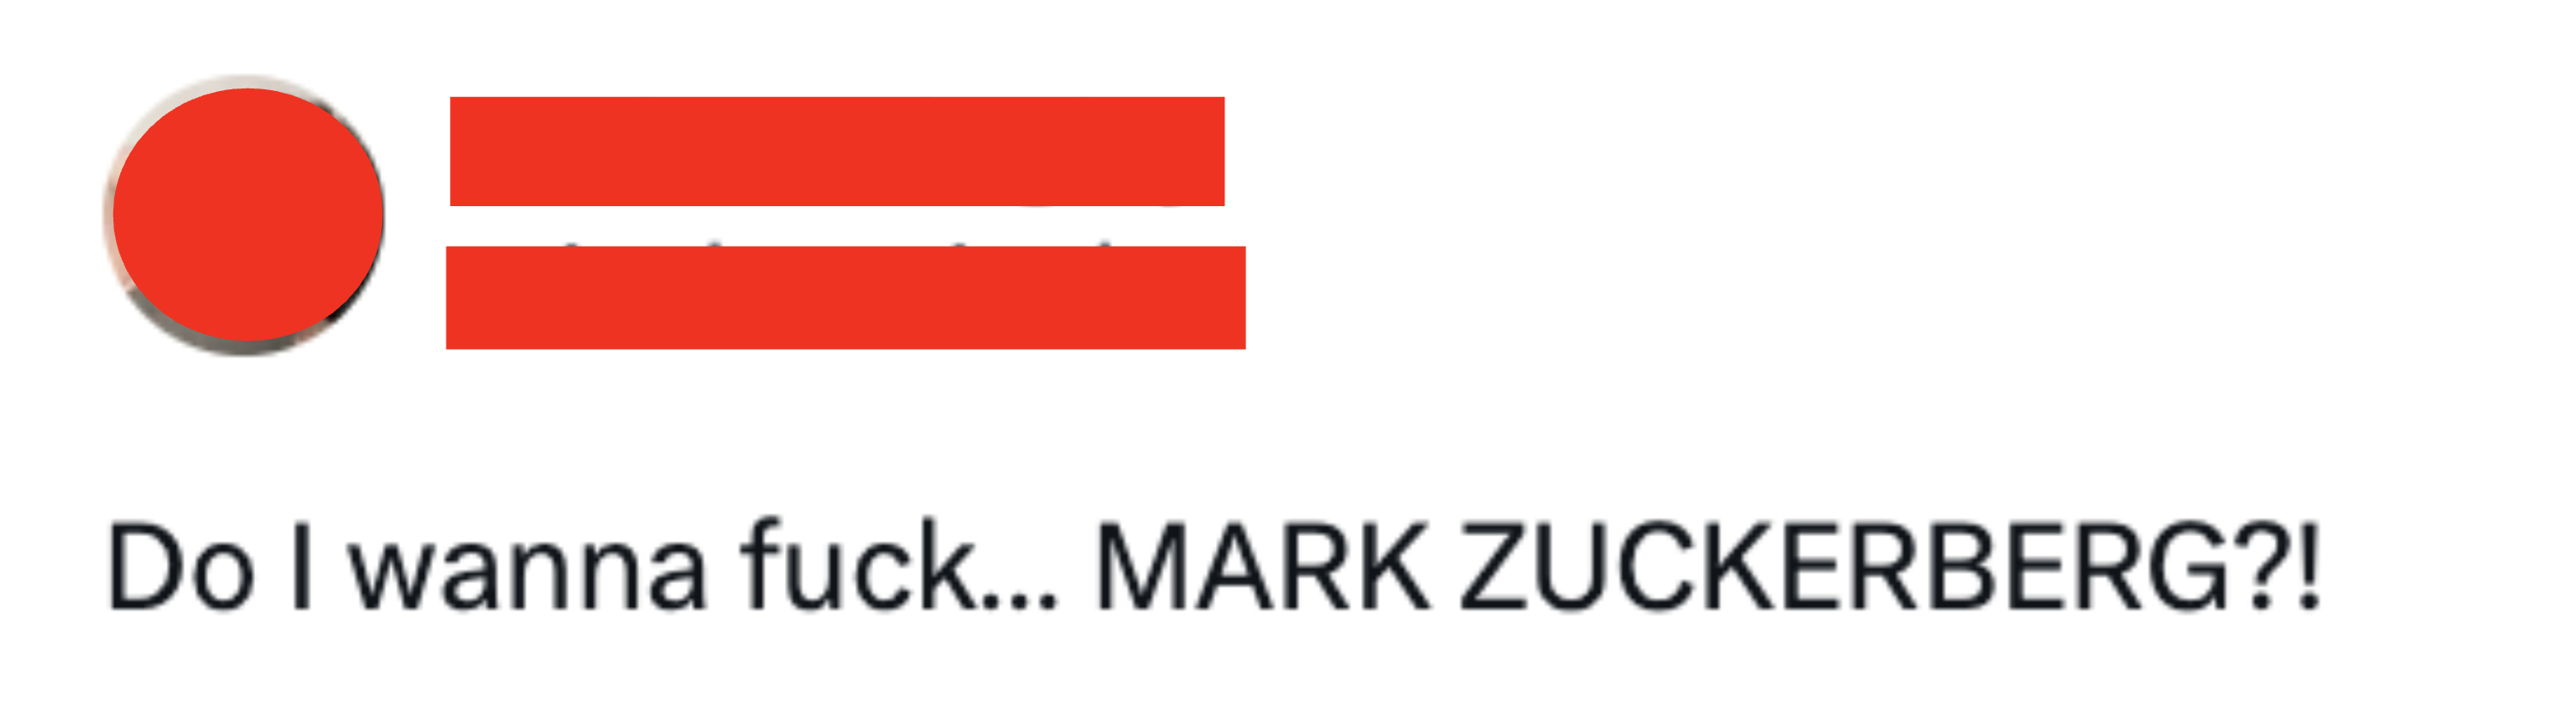 Do I wanna fuck...MARK ZUCKERBERG?!